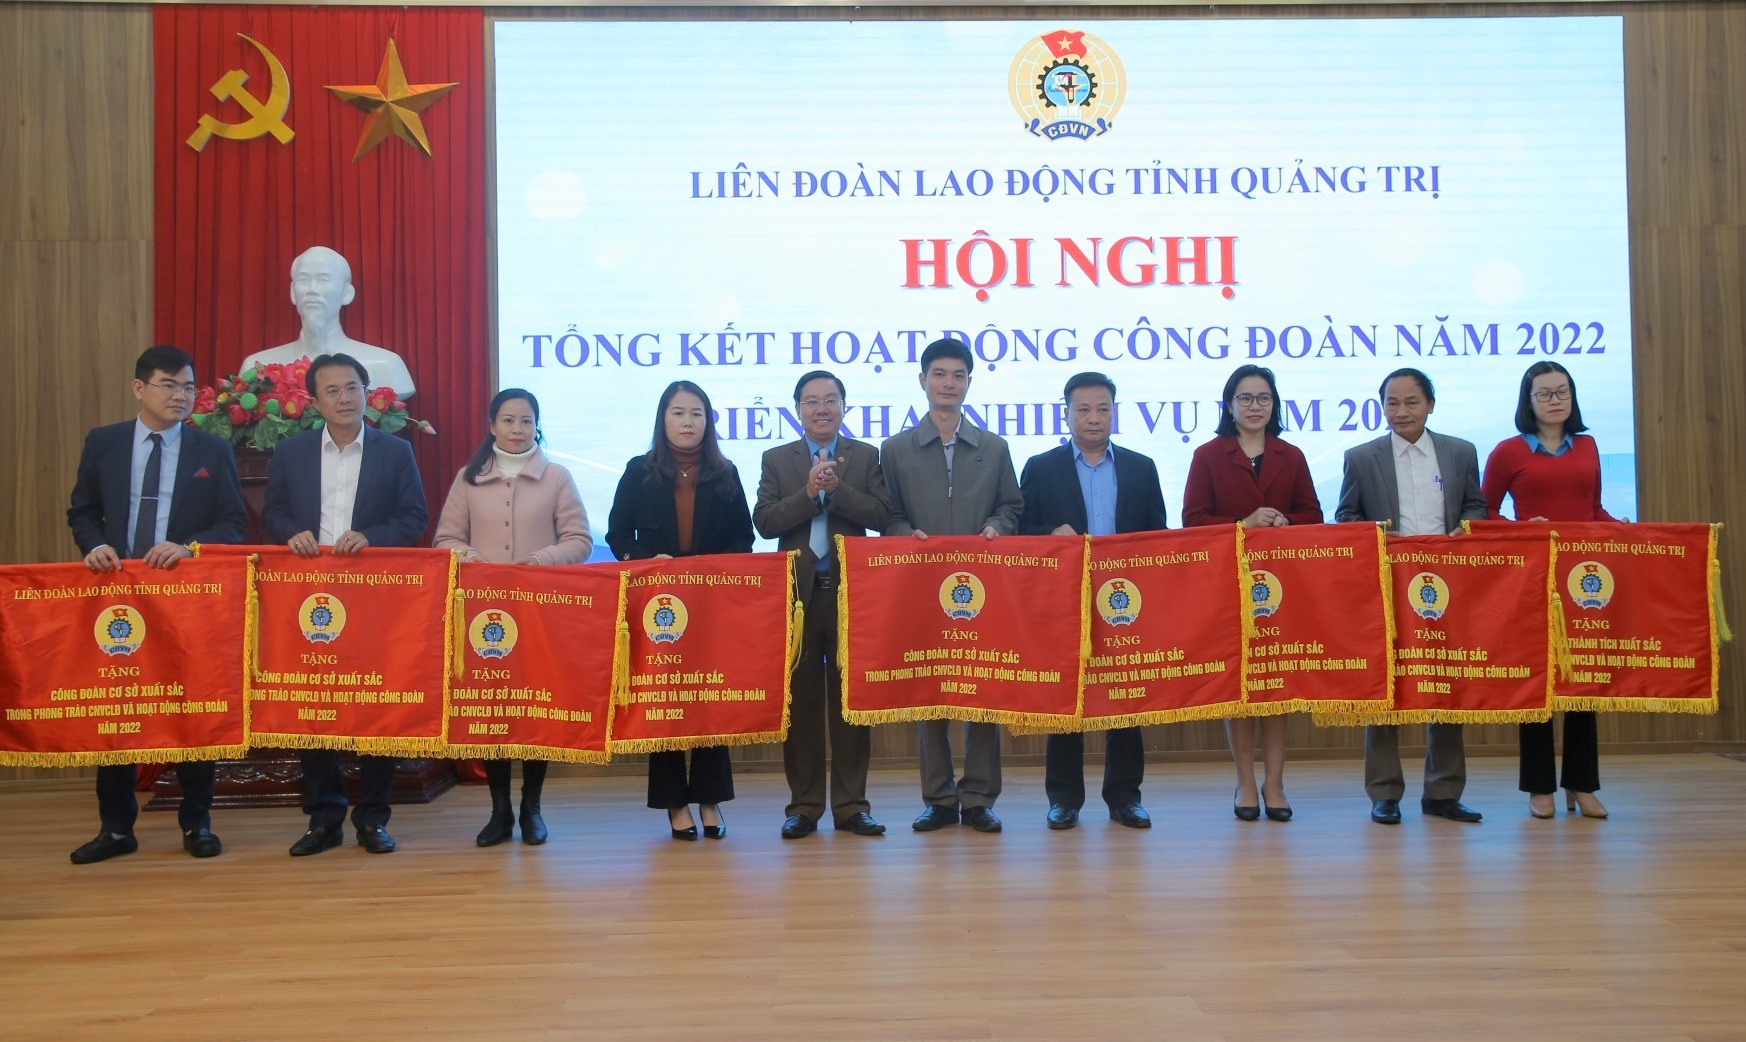 9 đơn vị nhận Cờ thi đua của LĐLĐ tỉnh Quảng Trị. Ảnh: Hưng Thơ.